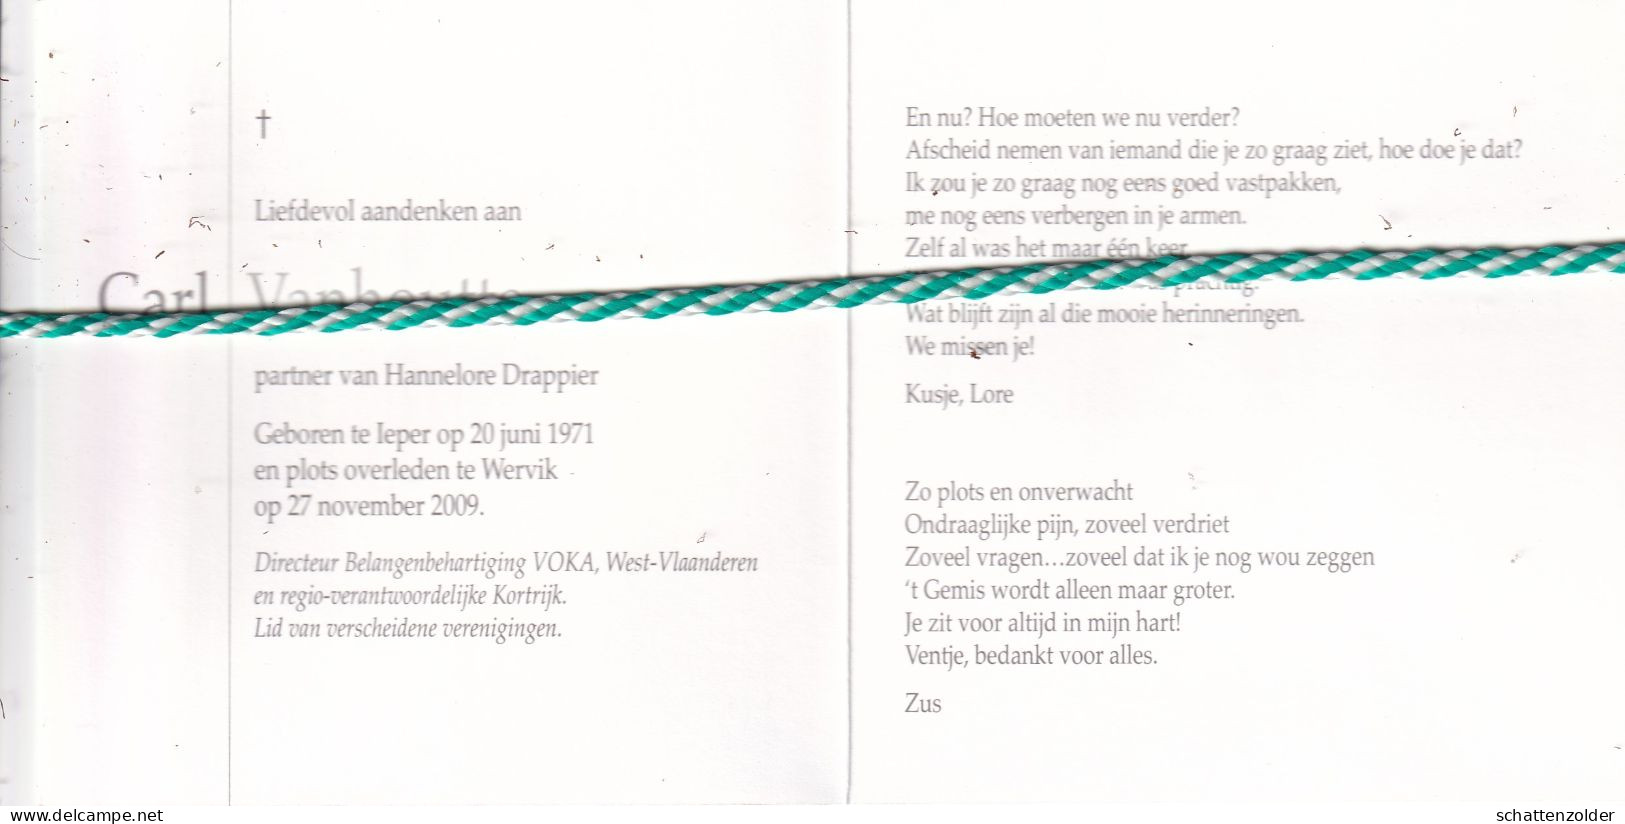 Carl Vanhoutte-Drappier, Ieper 1971, Wervik 2009 - Esquela